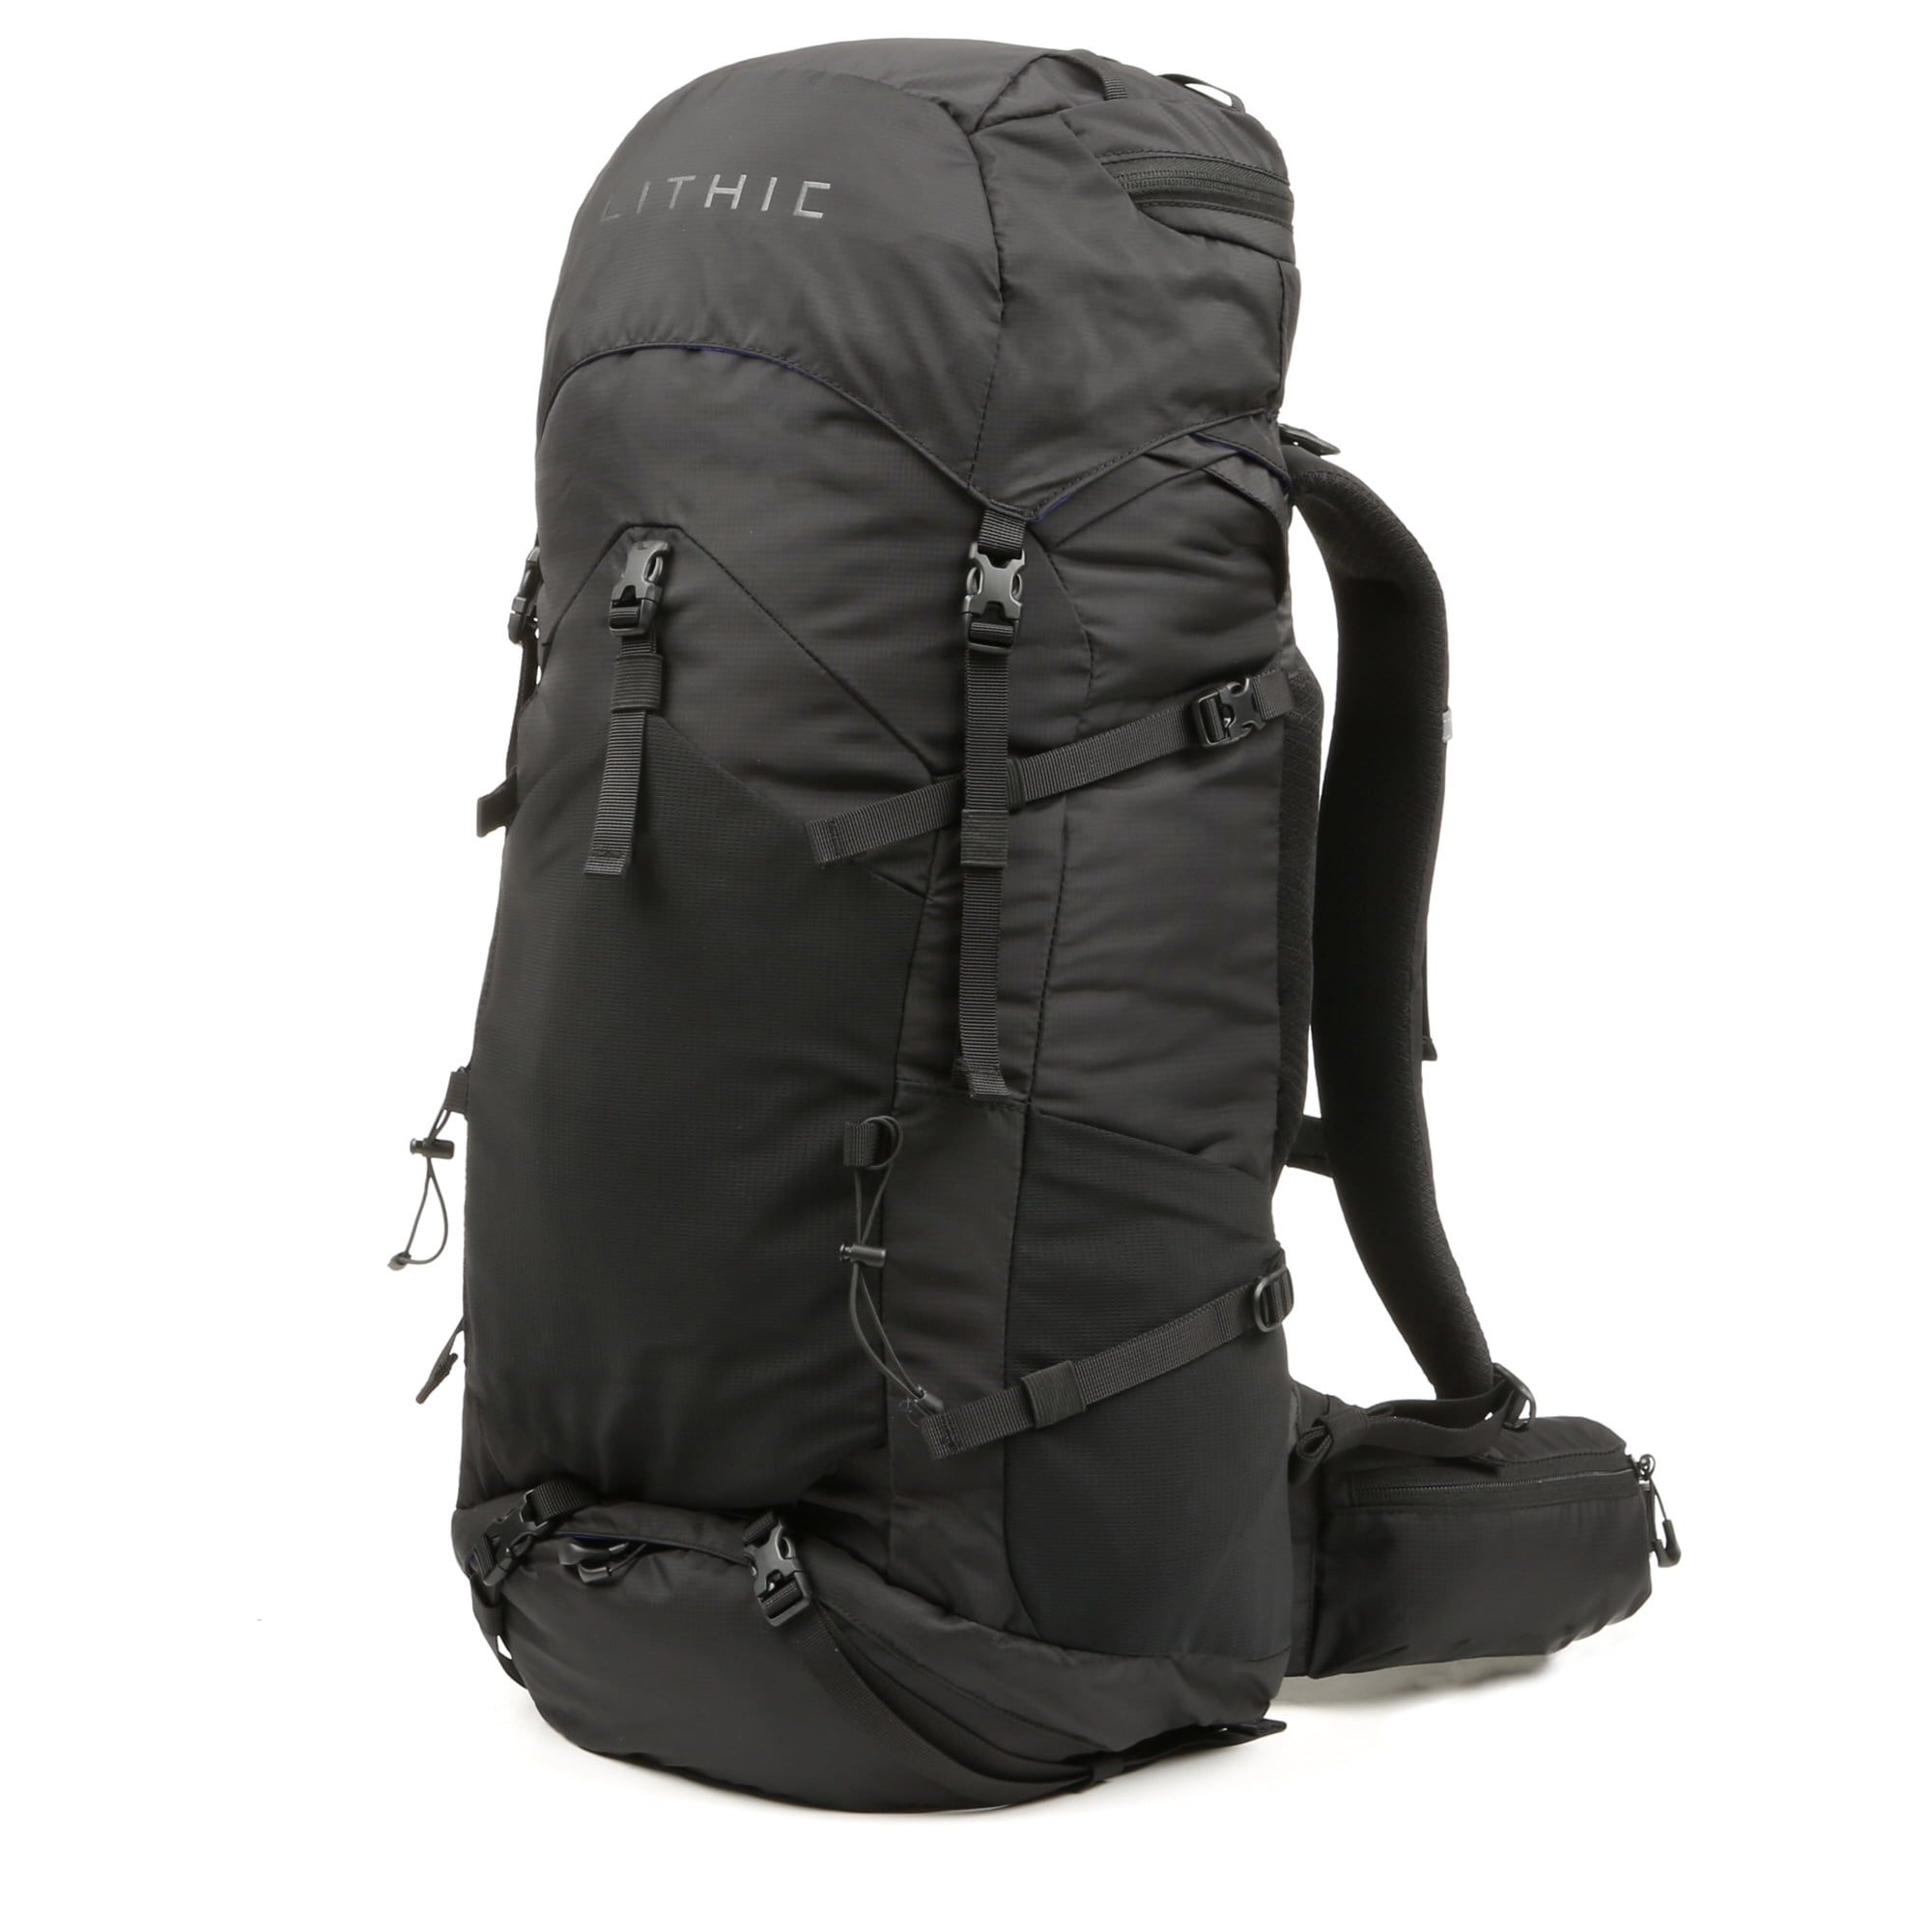 LITHIC 40 Liter Hiking Backpack, Solid Print, Black - Walmart.com ...